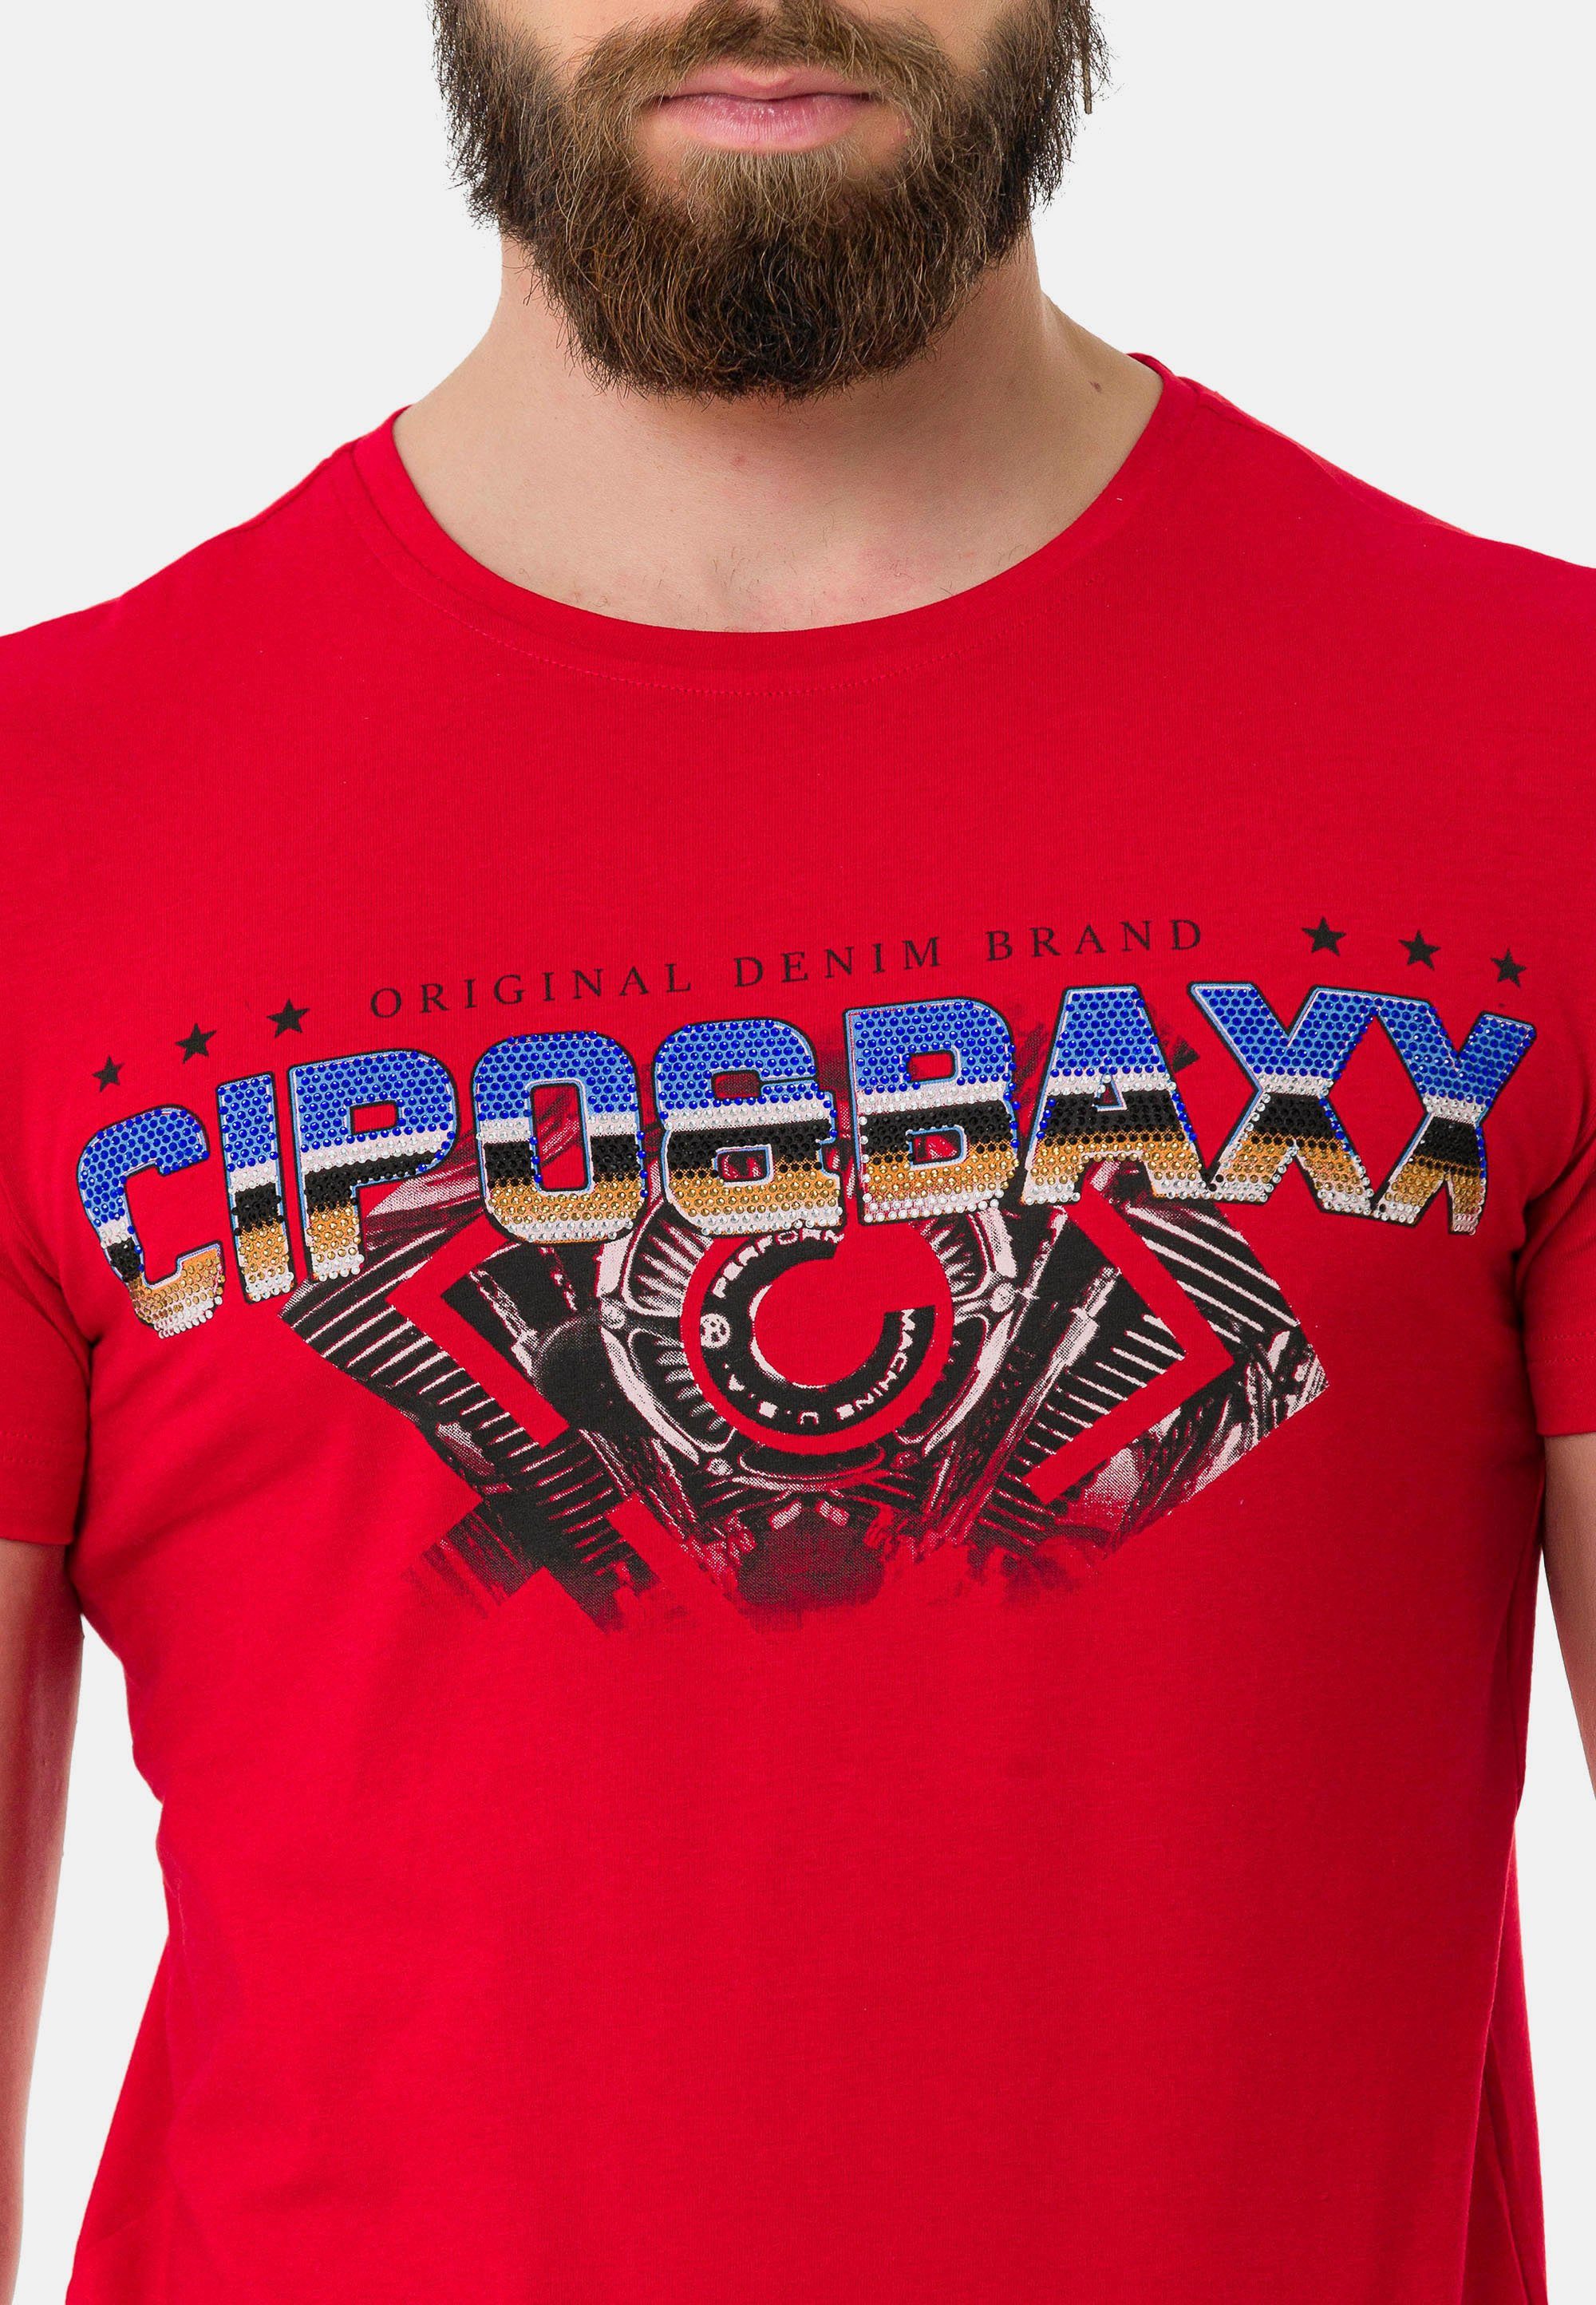 Cipo & Baxx T-Shirt mit rot Marken-Schriftzug trendigem